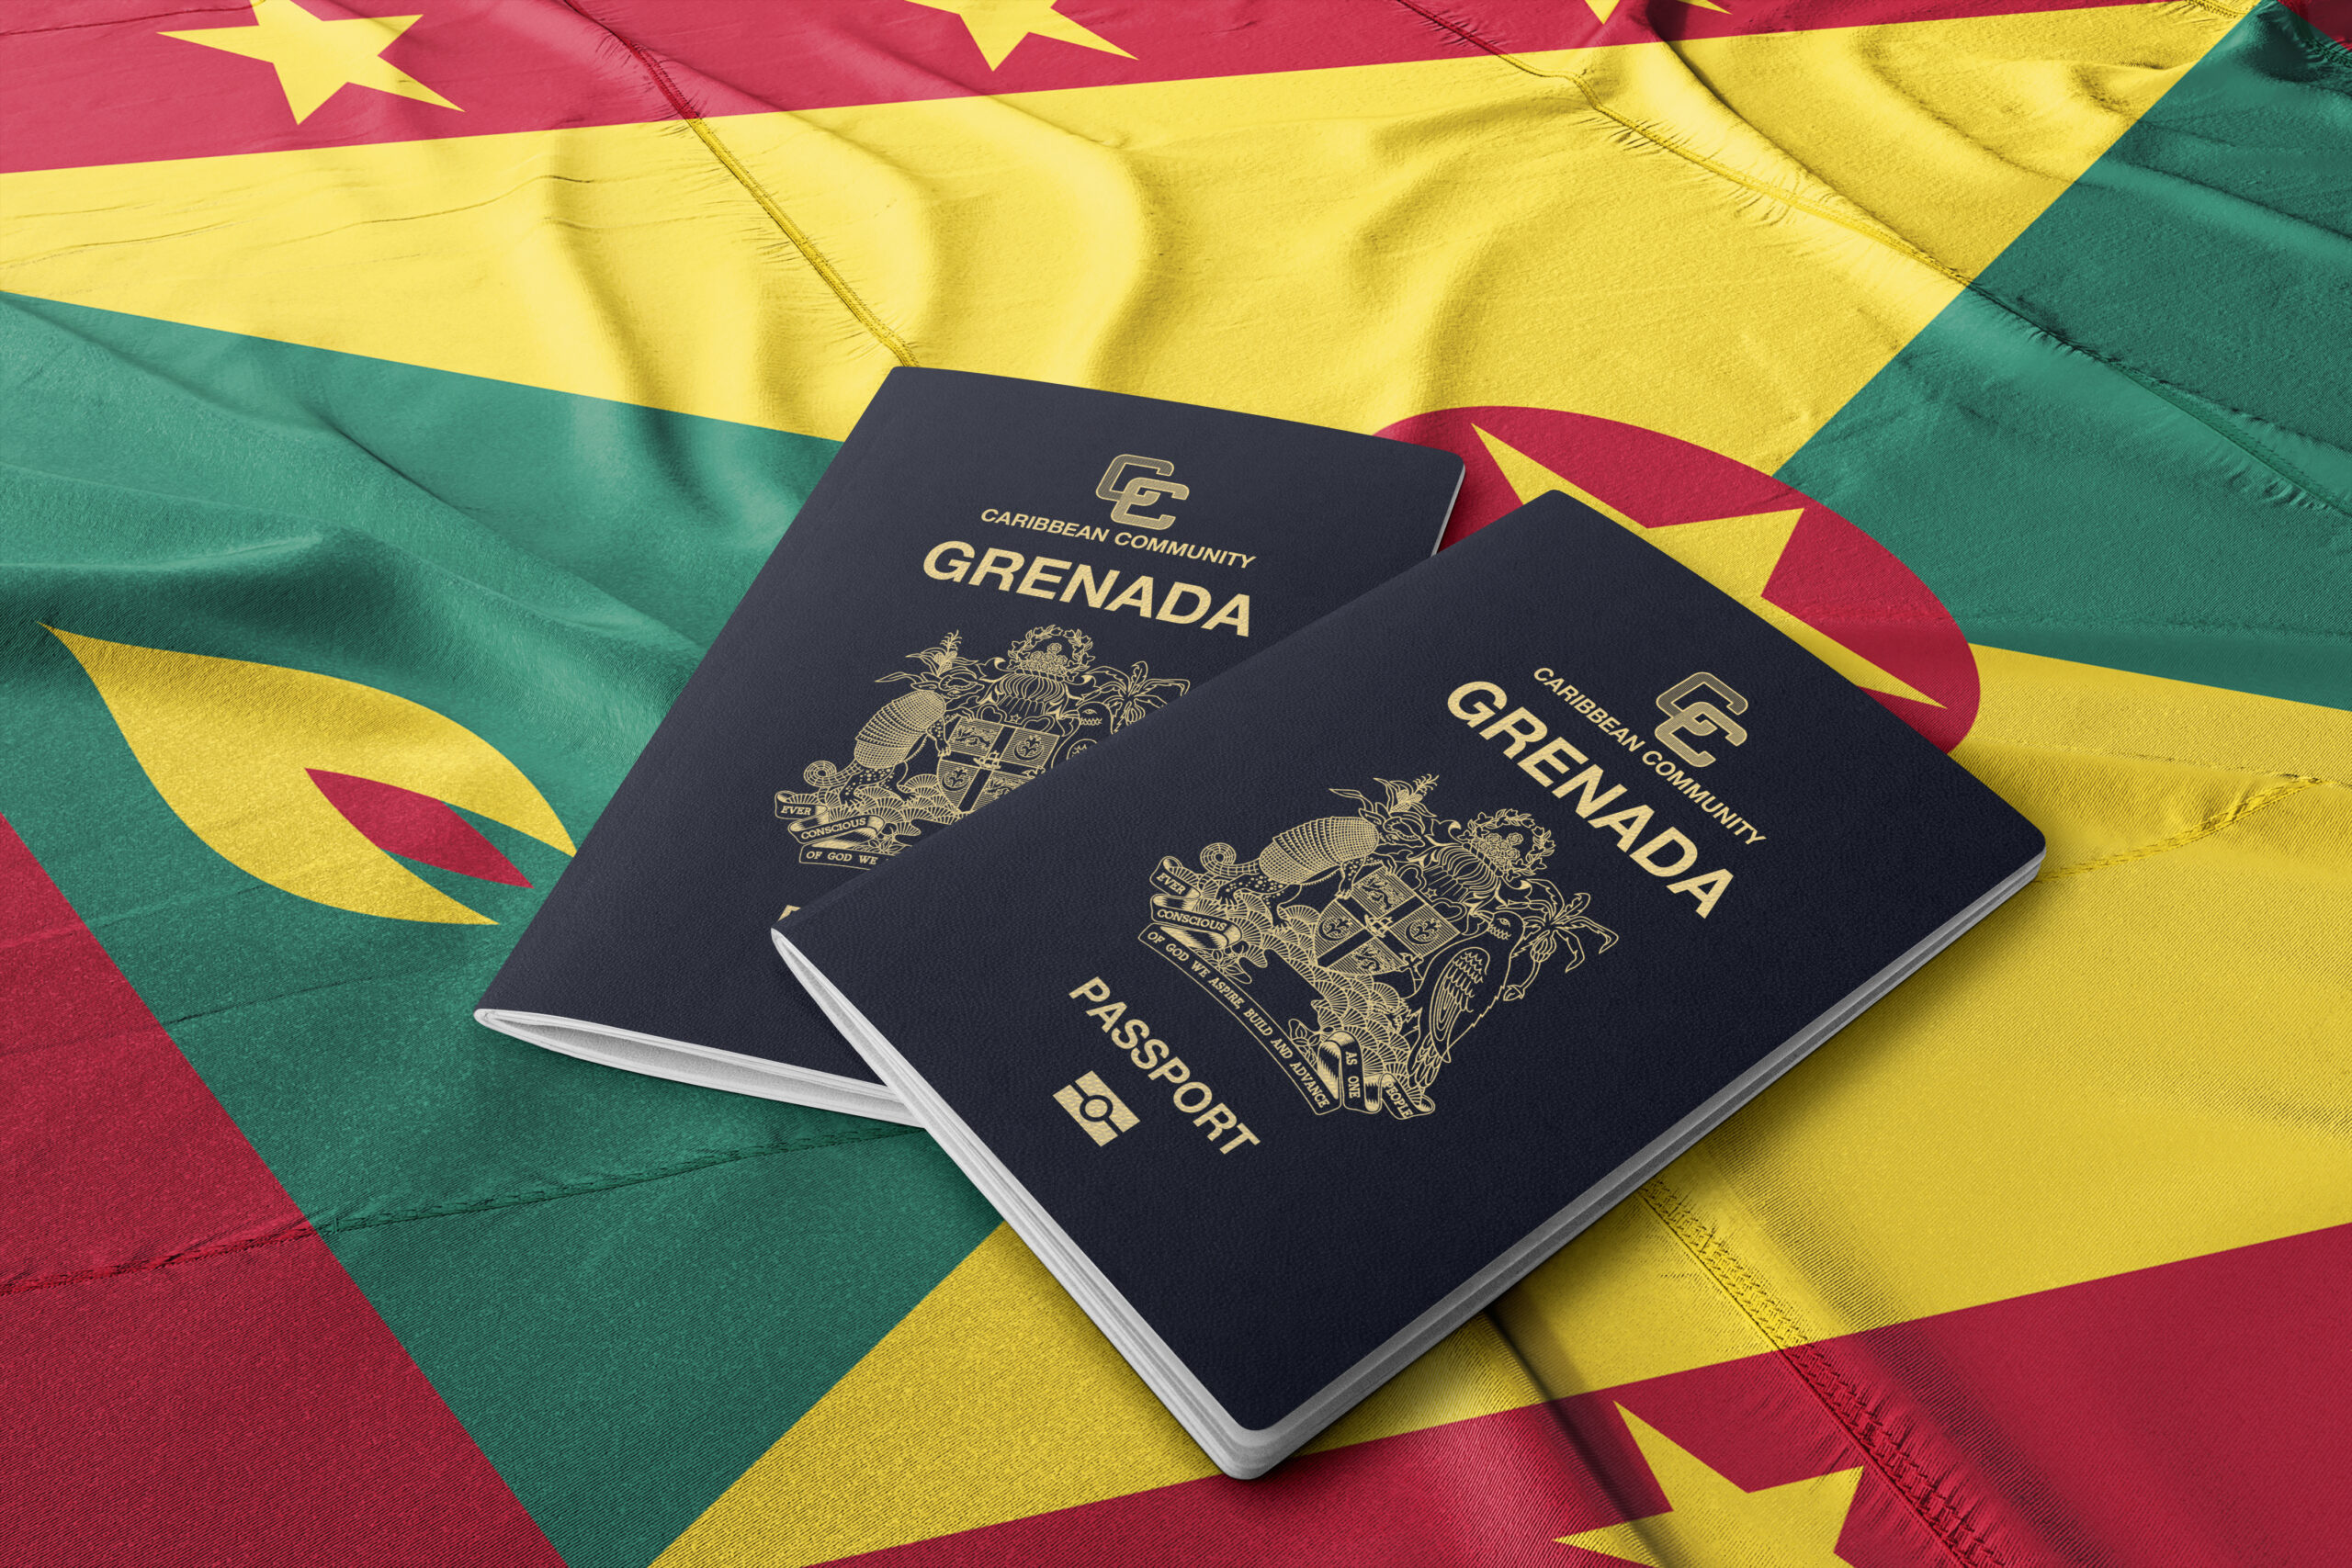 Grenada citizenship